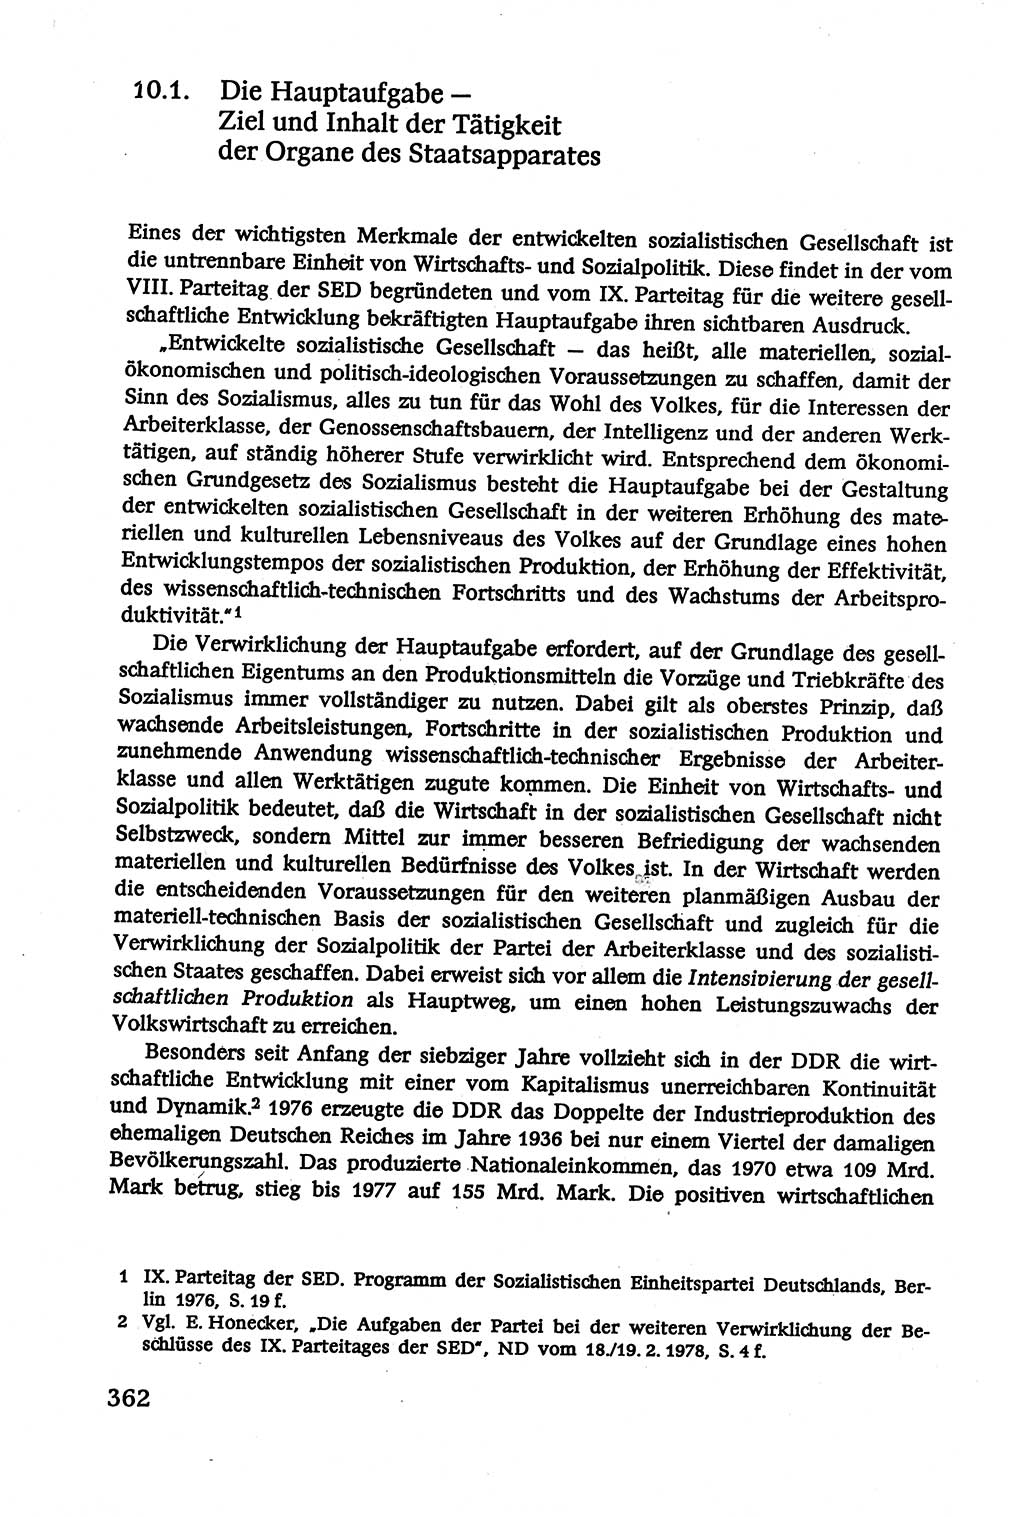 Verwaltungsrecht [Deutsche Demokratische Republik (DDR)], Lehrbuch 1979, Seite 362 (Verw.-R. DDR Lb. 1979, S. 362)